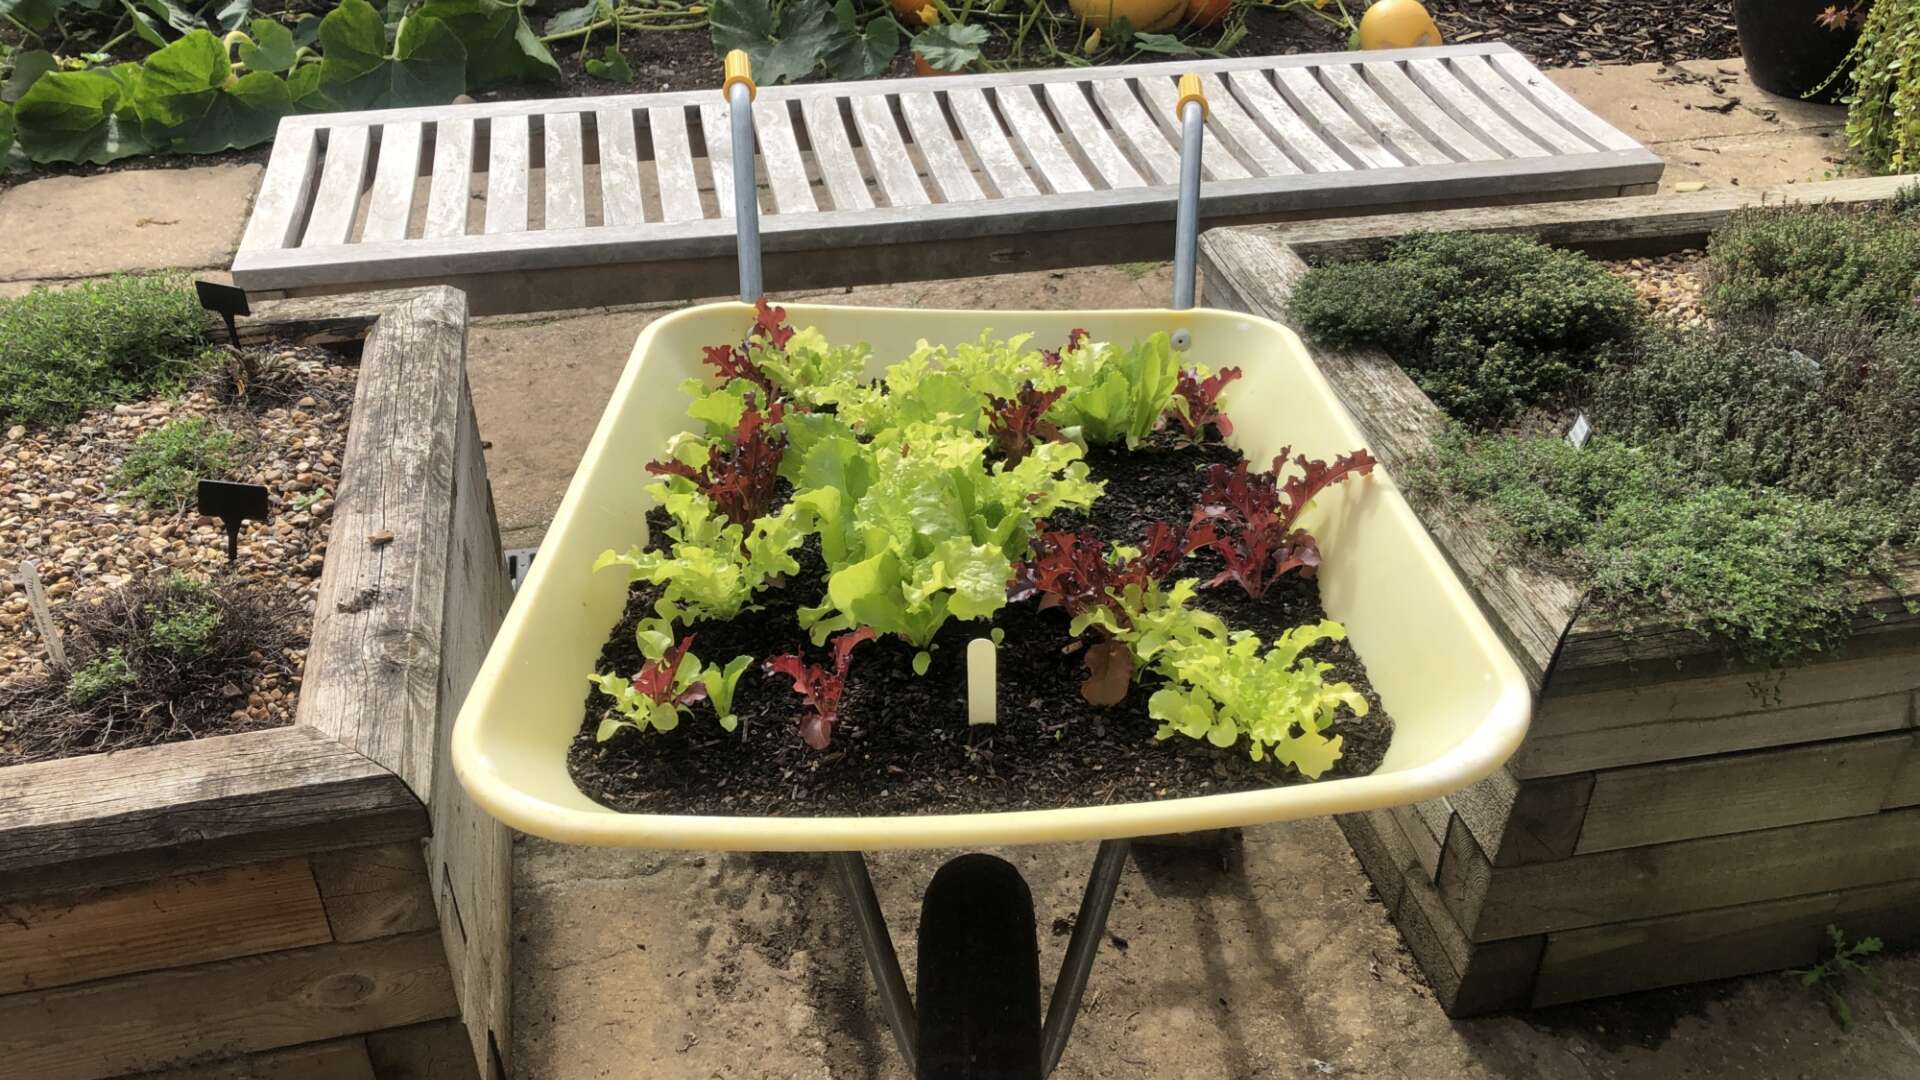 Lettuce growing in wheelbarrow